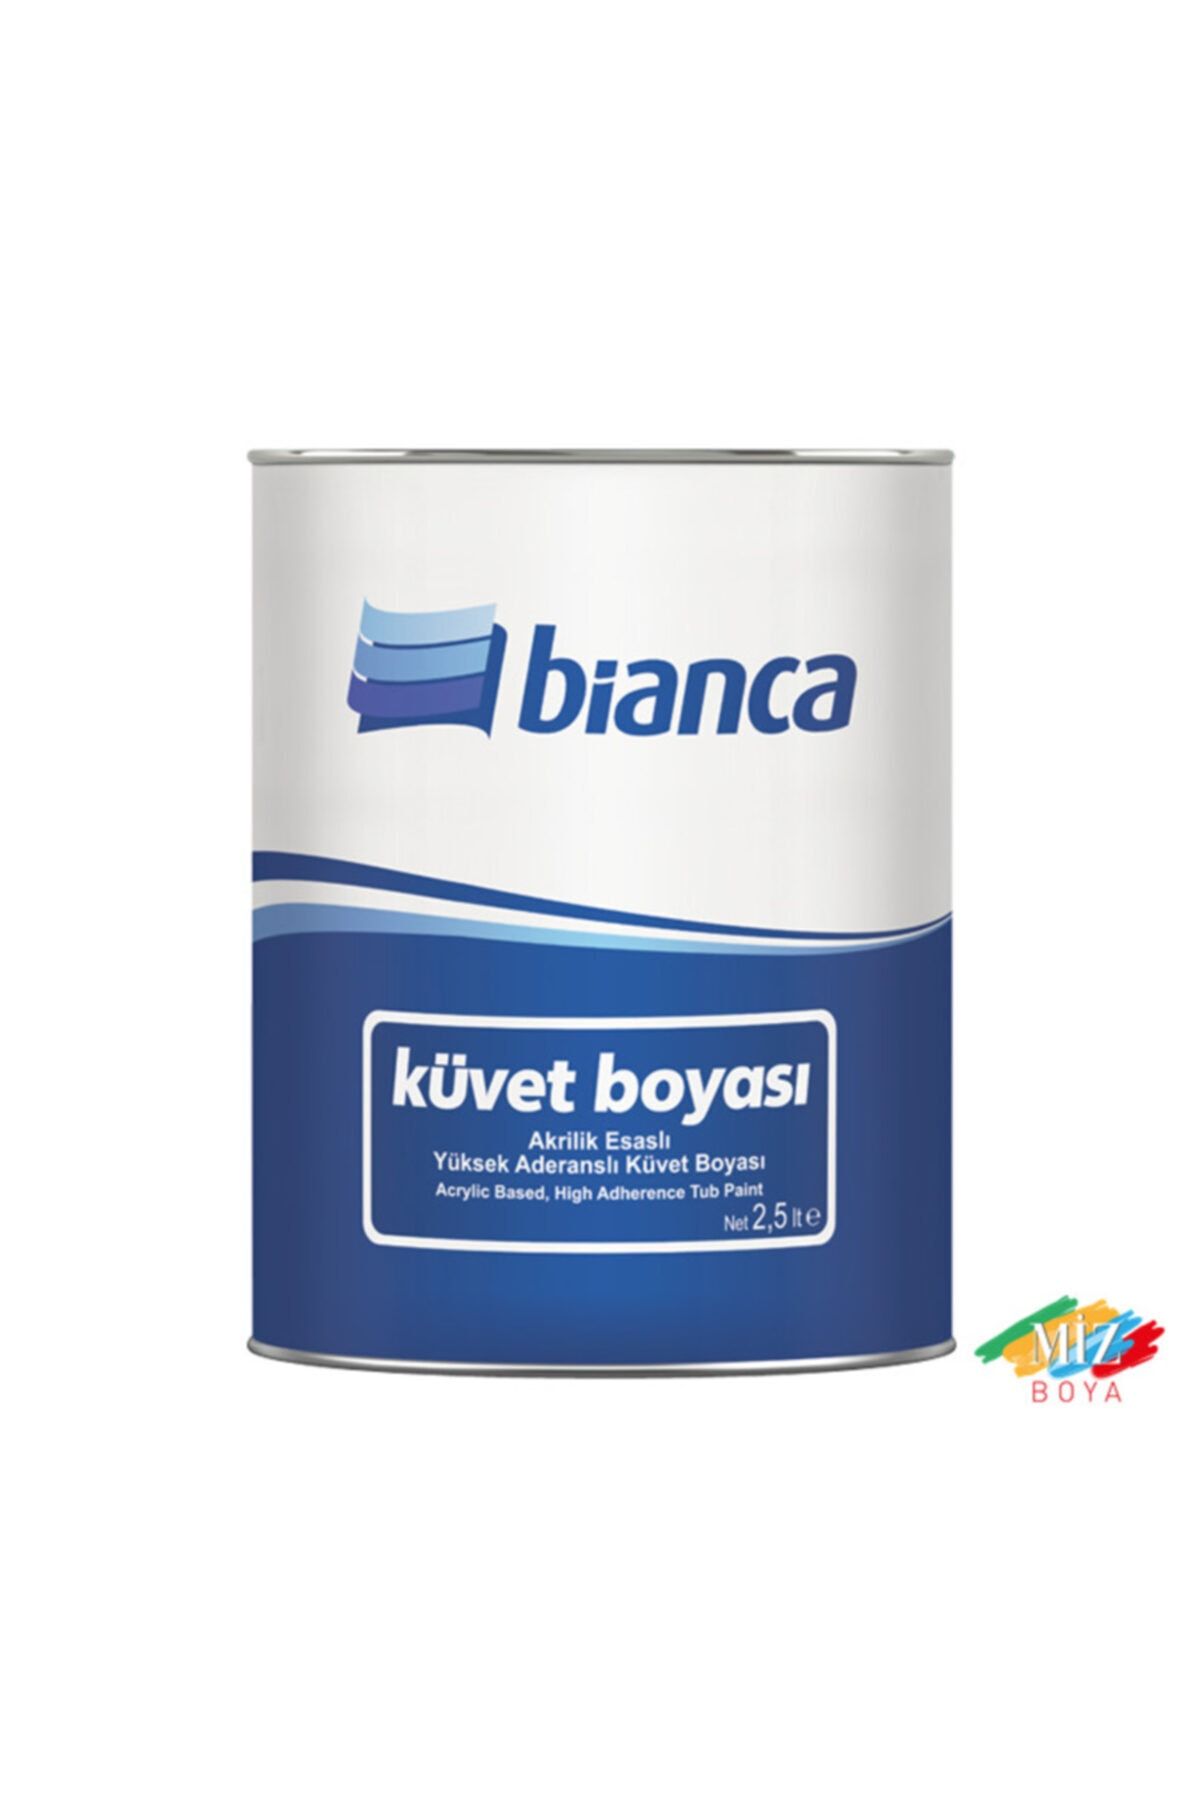 Bianca Küvet Boyası -2,5 Lt